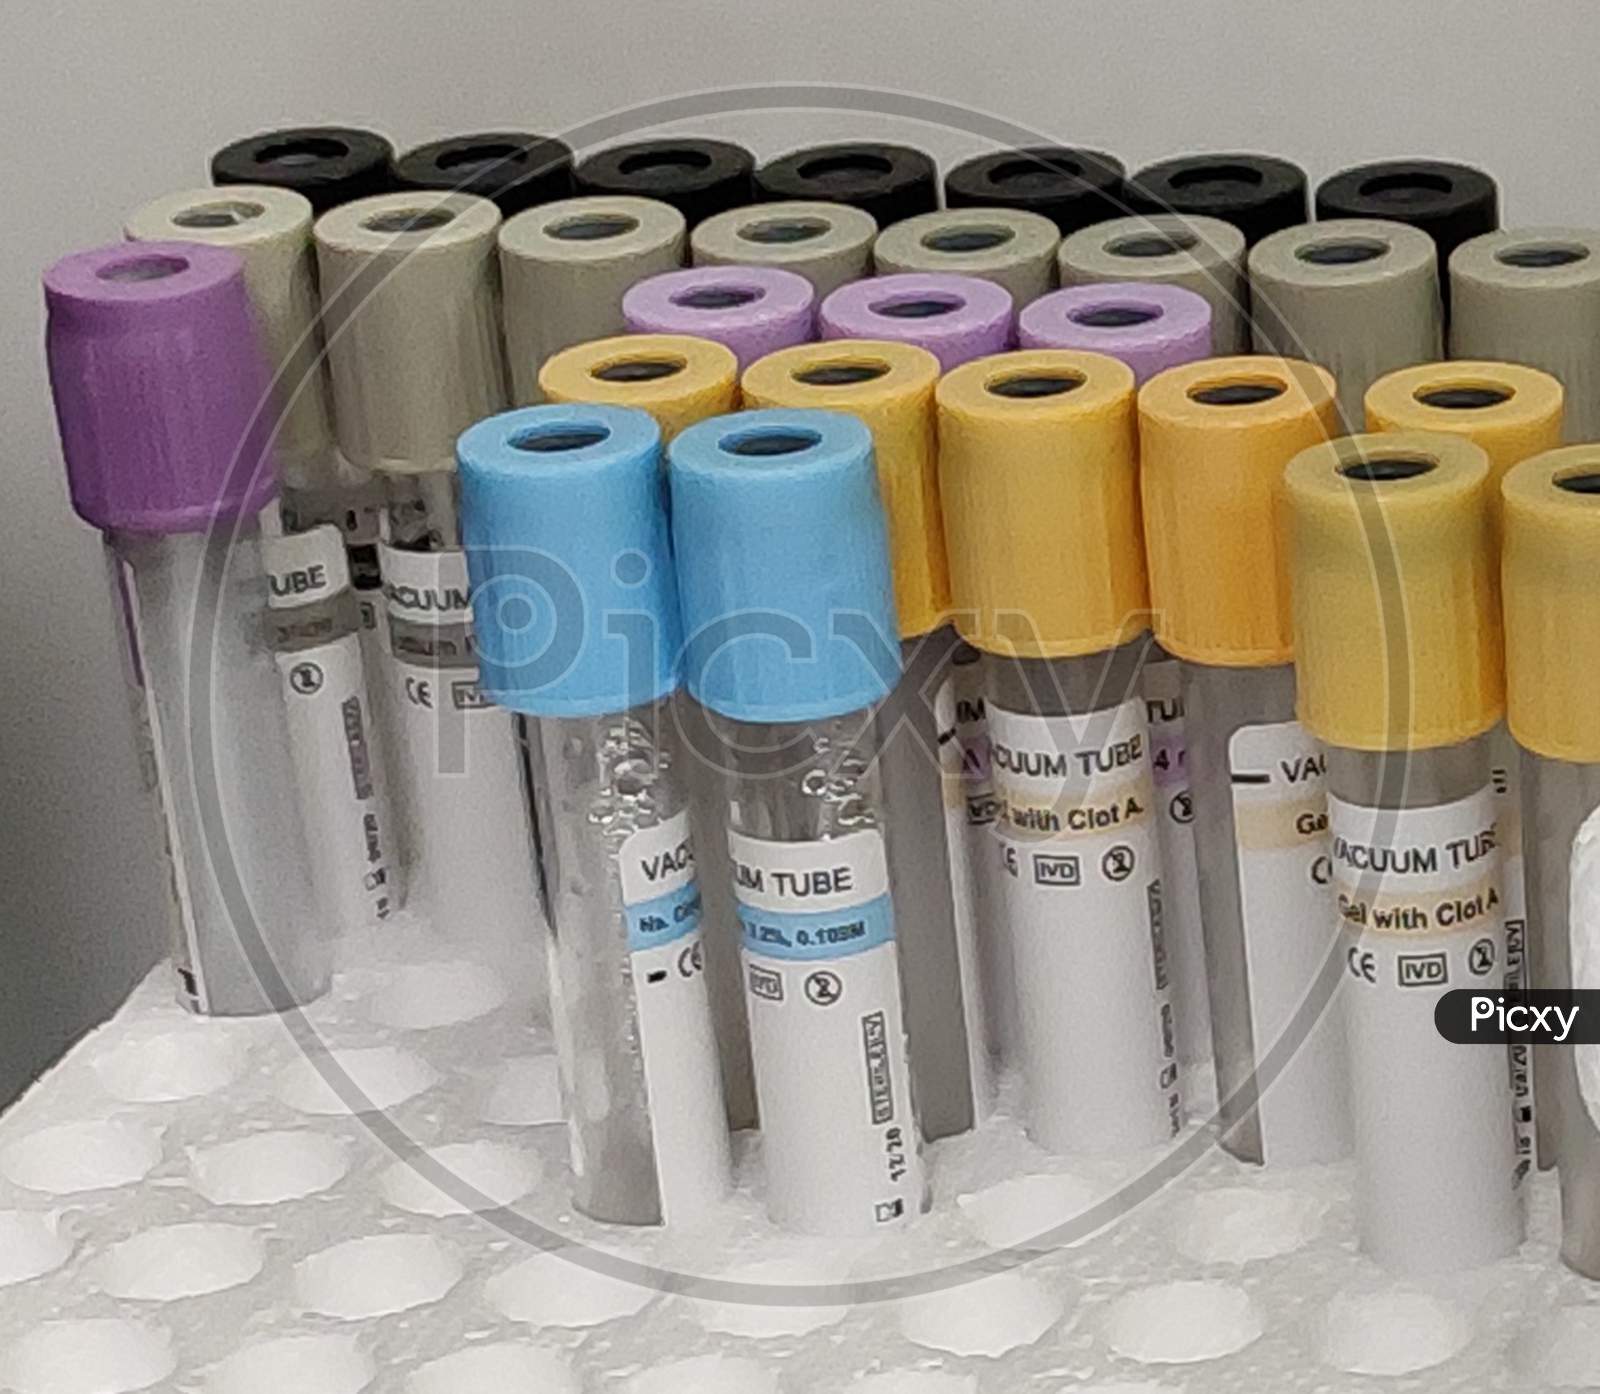 Blood test kit arranged in tube holders